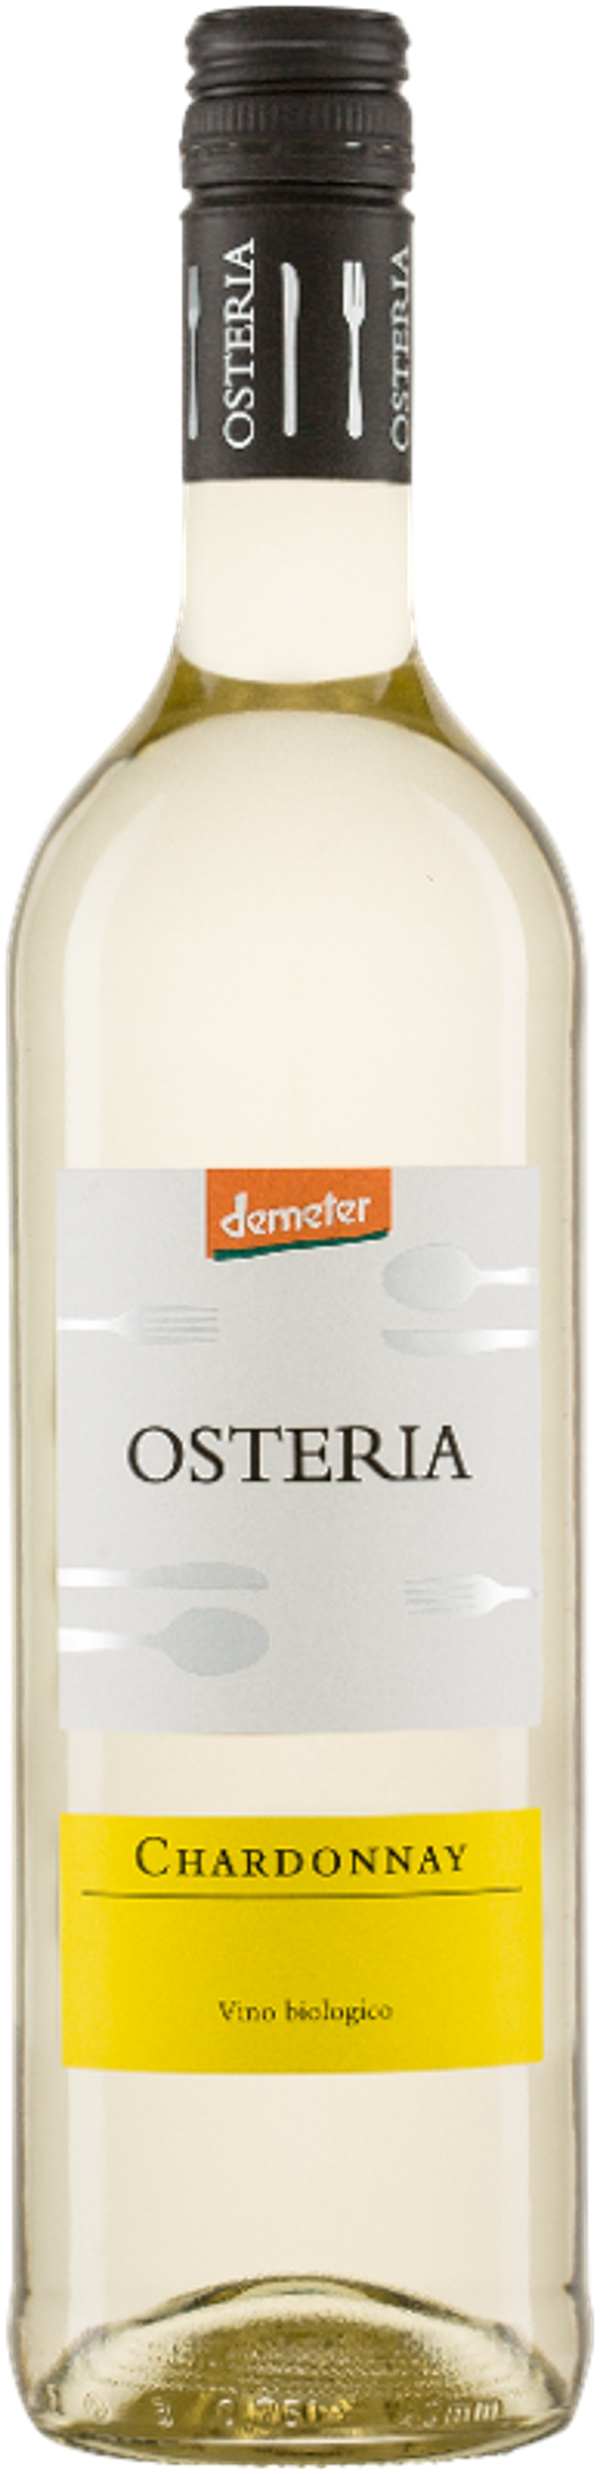 Produktfoto zu Osteria Chardonnay, 0,75 l